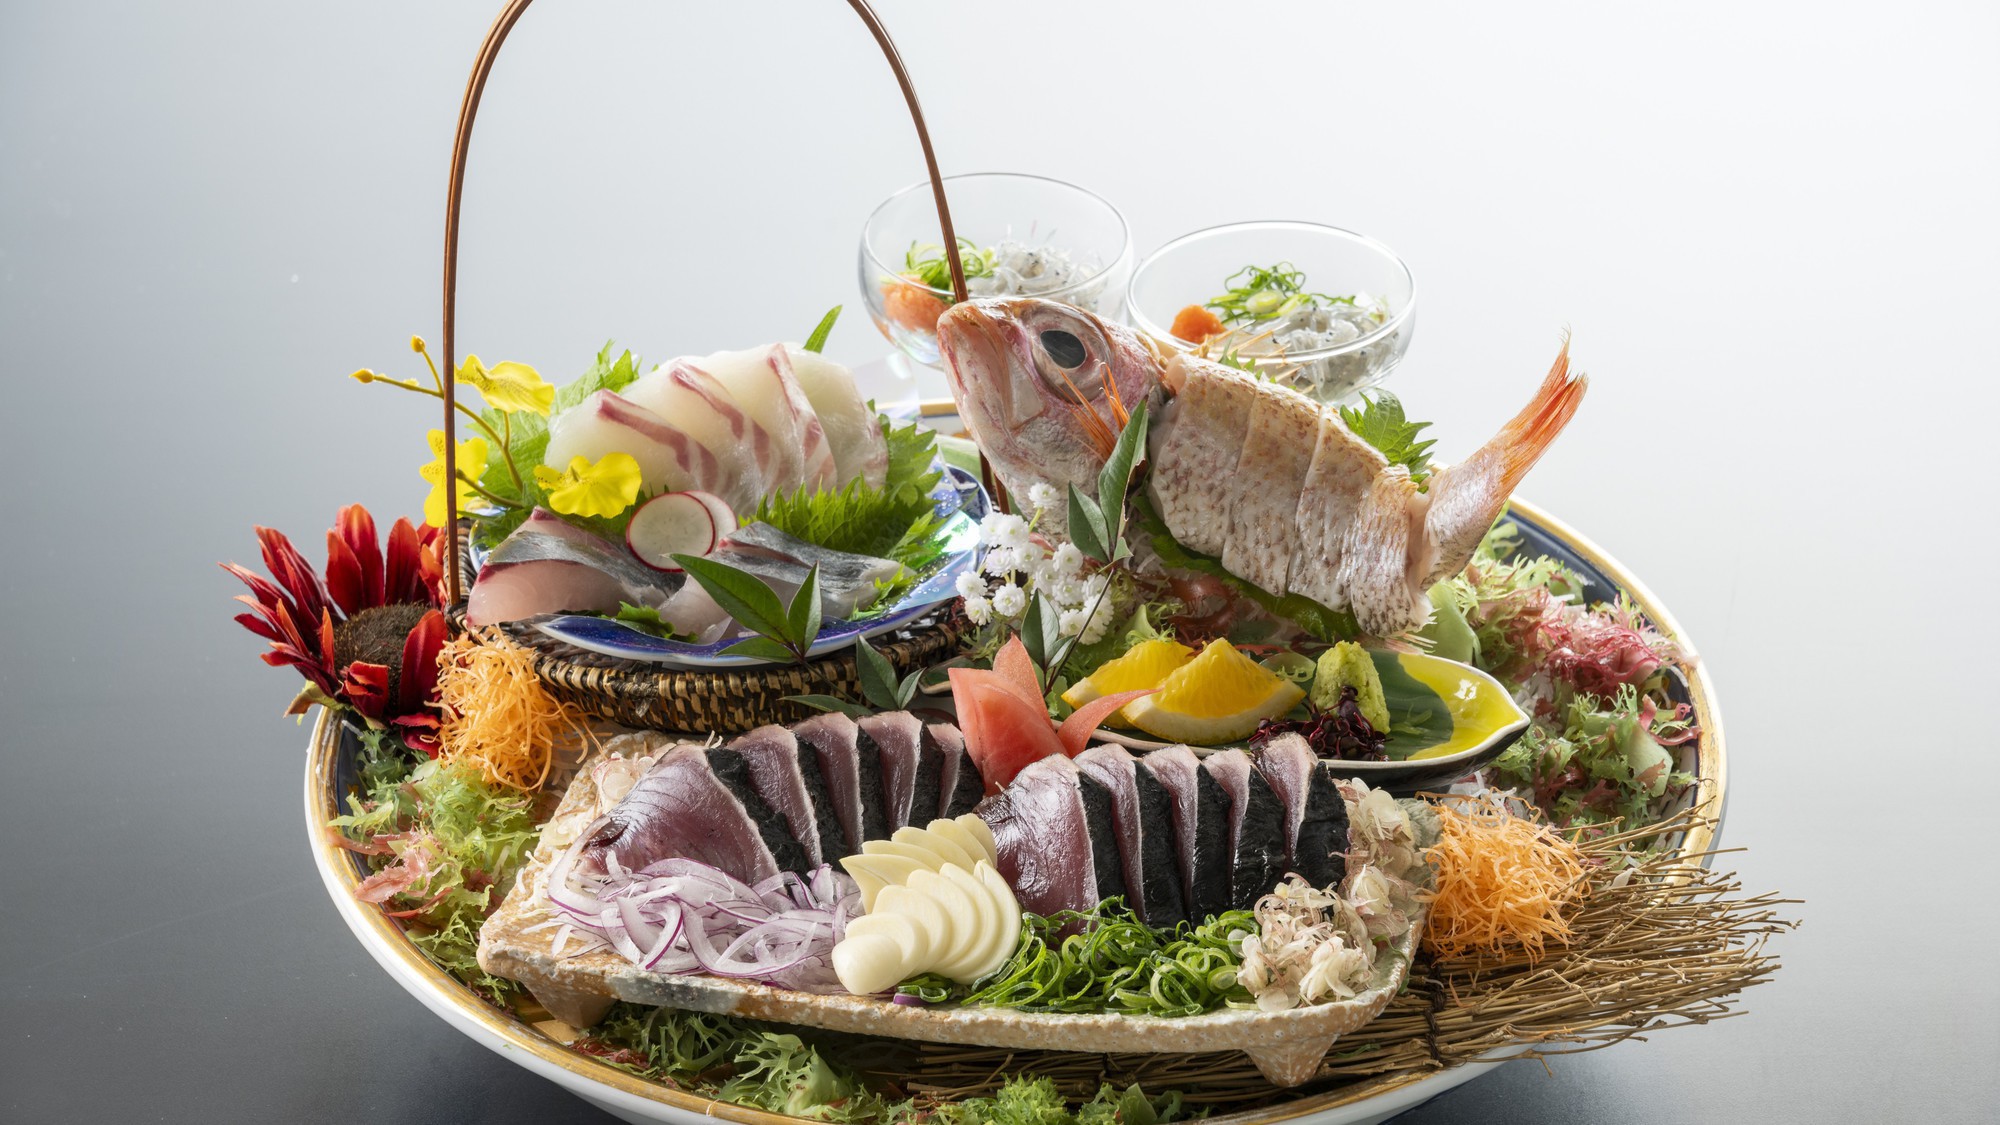 【皿鉢料理】鰹のタタキはもちろん、乙女鯛や土佐縞鯵など新鮮な旬魚の刺身を盛り付け